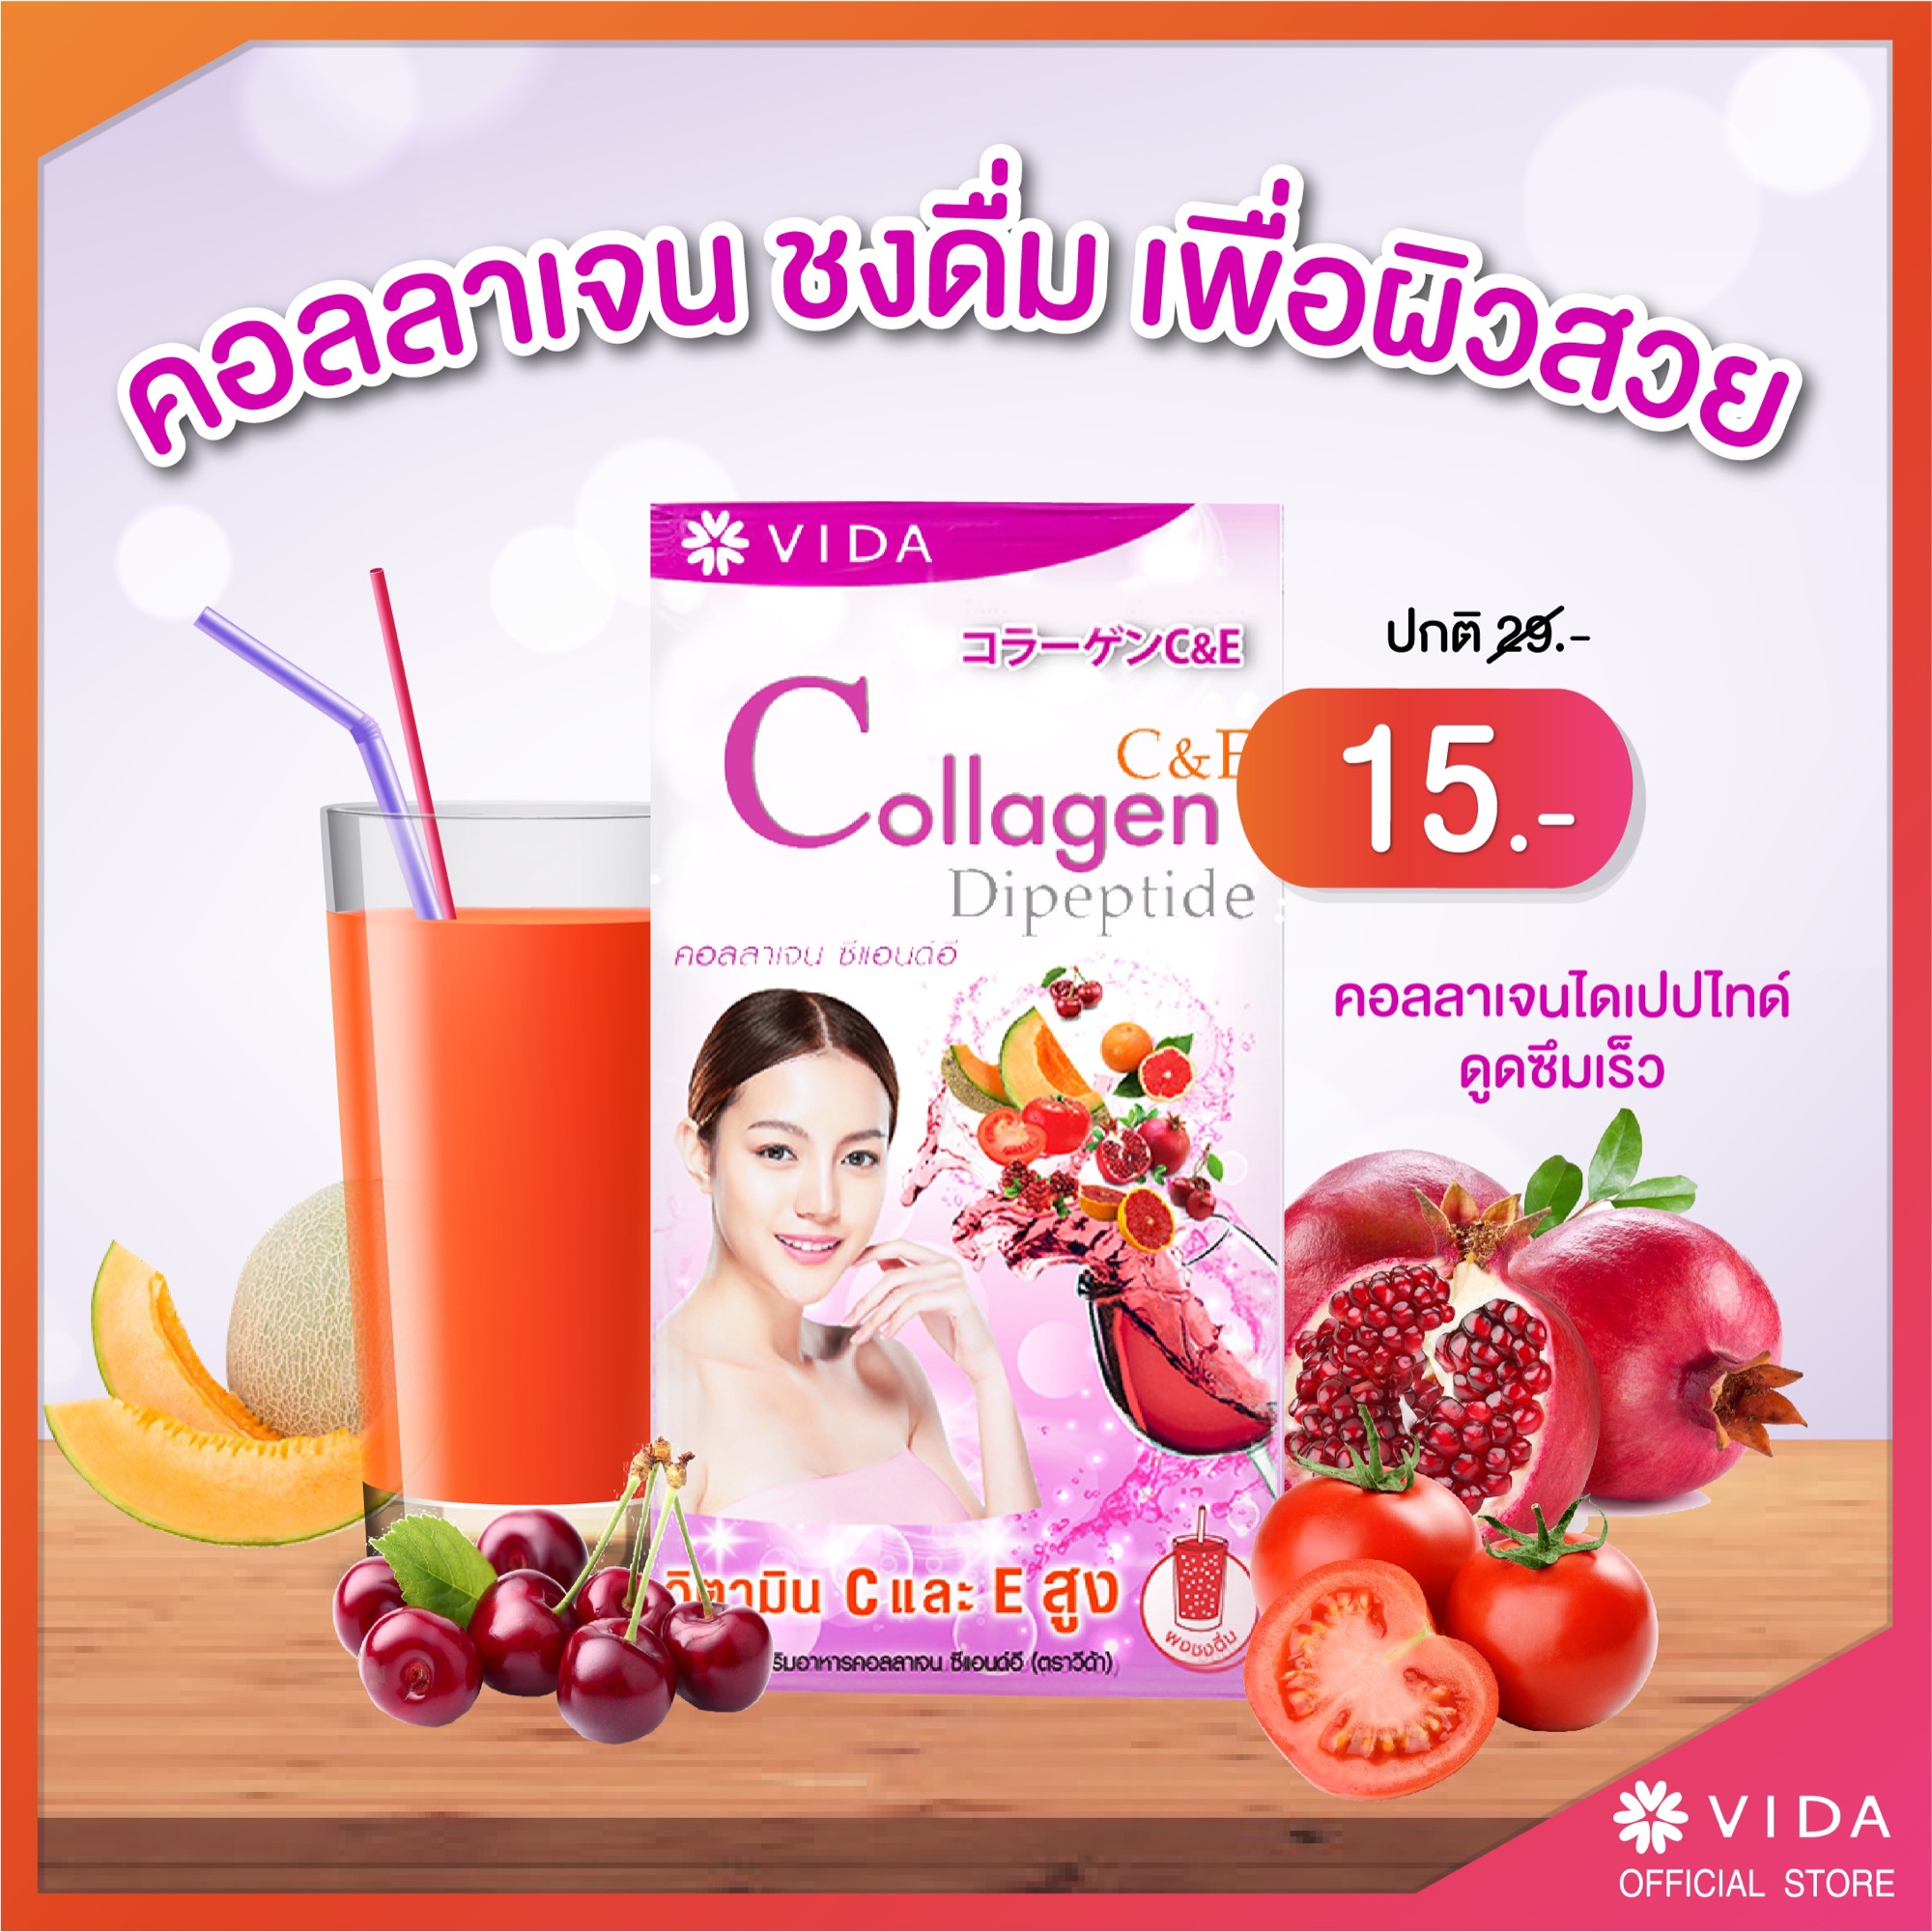 Vida Collagen C&E คอลลาเจน 1 ซอง